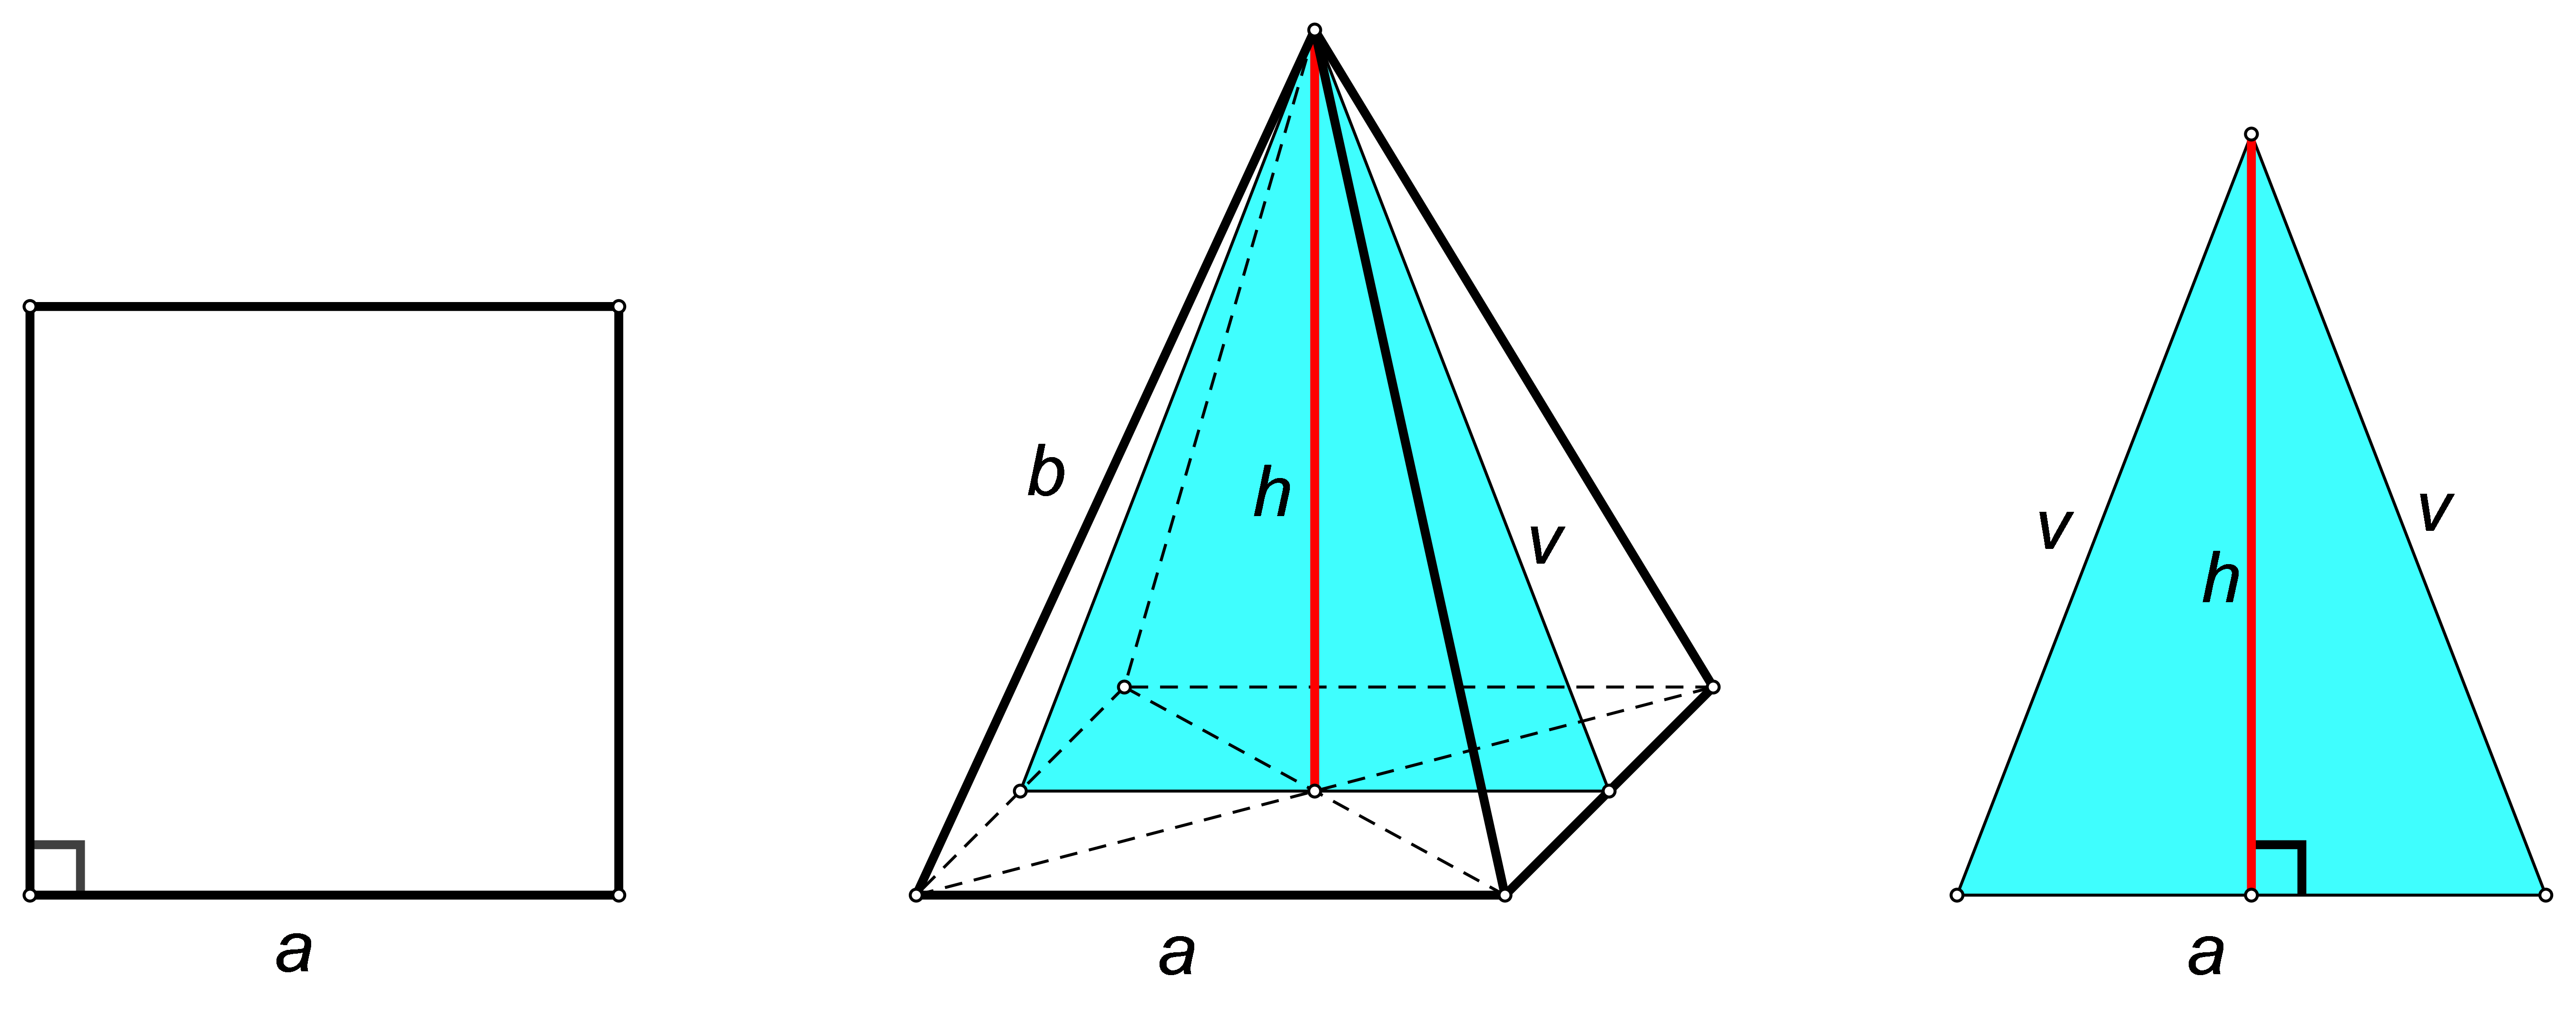 Slika prikazuje pravilnu četverostranu piramidu, njezinu bazu te presjek pravilne četverostrane piramide ravninom koja je određena njenim vrhom i polovištima dvaju nasuprotnih osnovnih bridova.